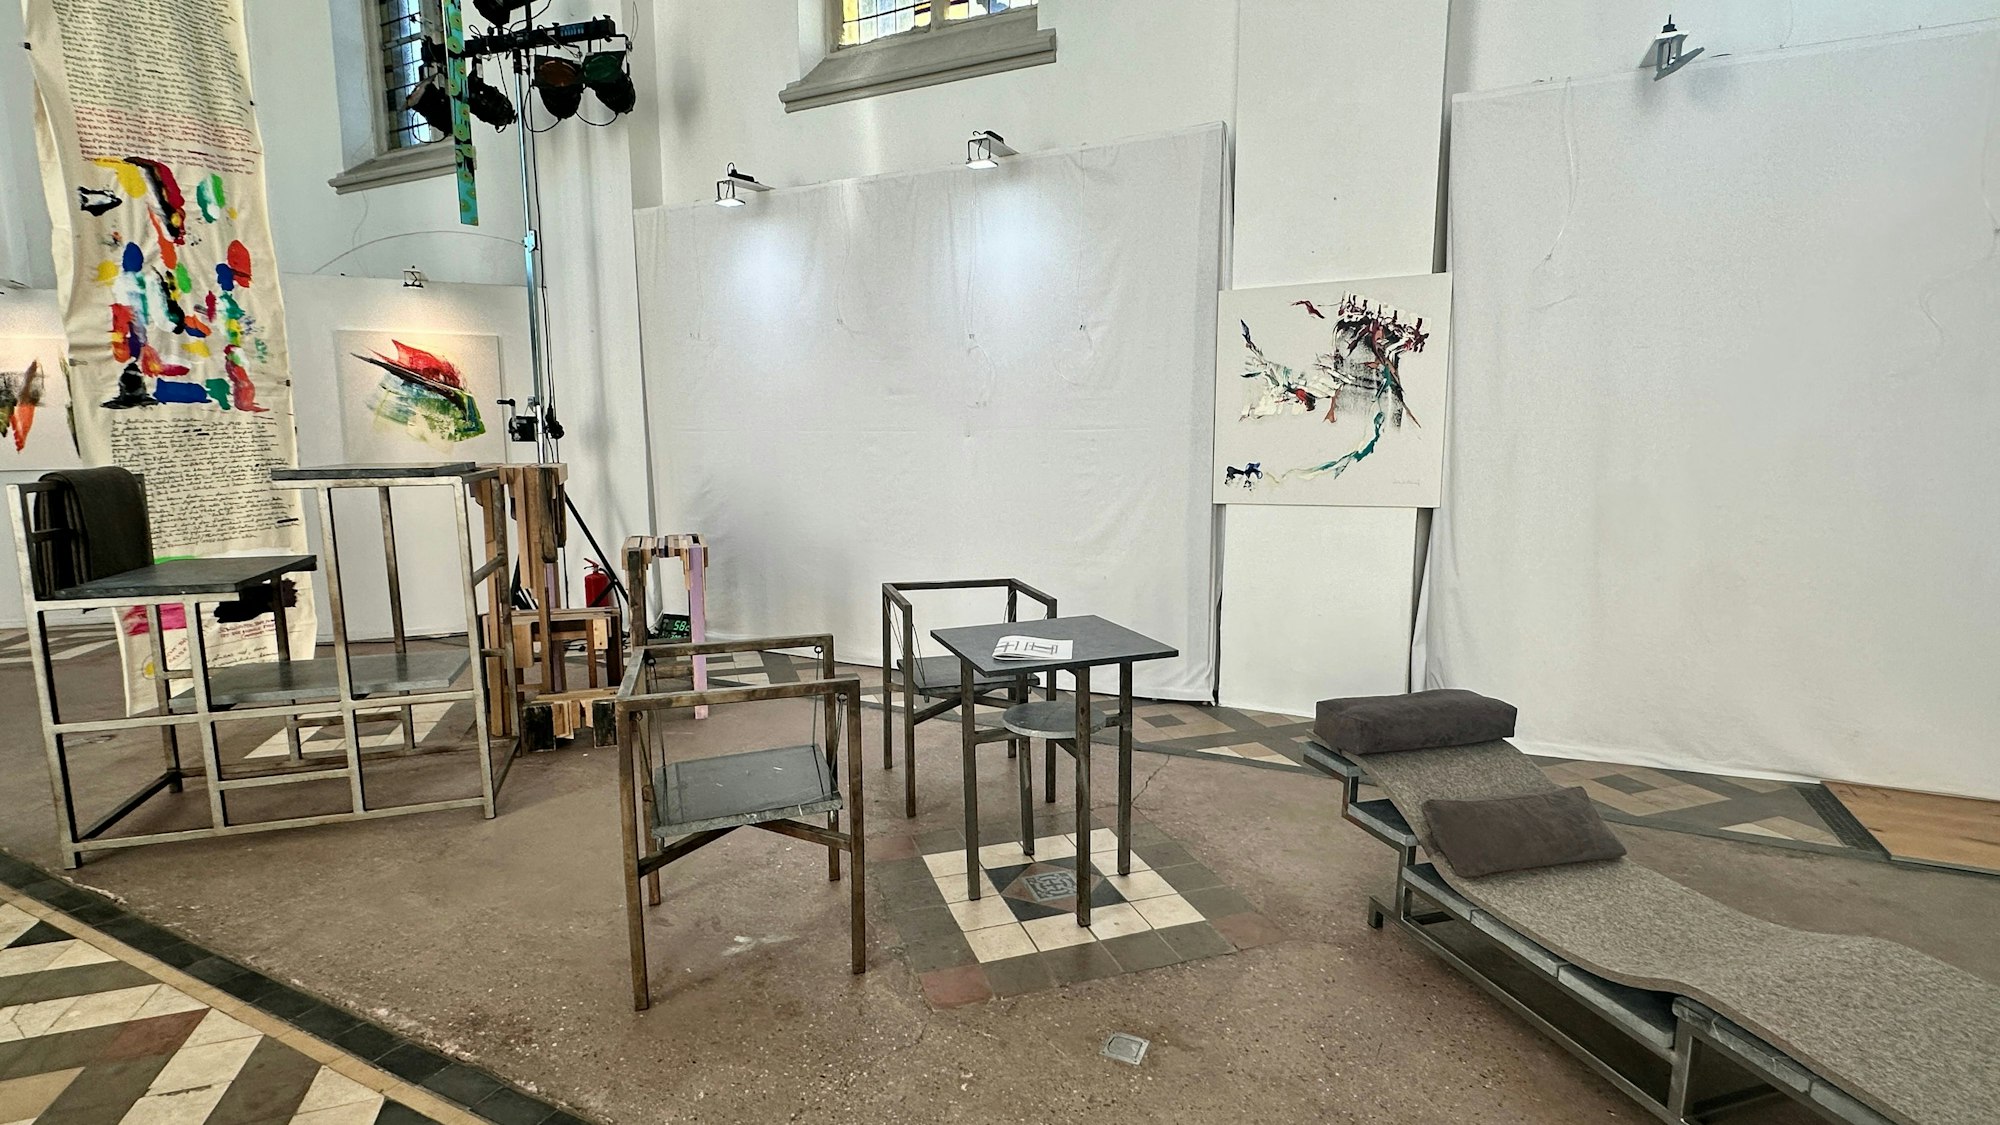 Stühle, eine Liege und Bilder sind in einem Kirchenraum ausgestellt.